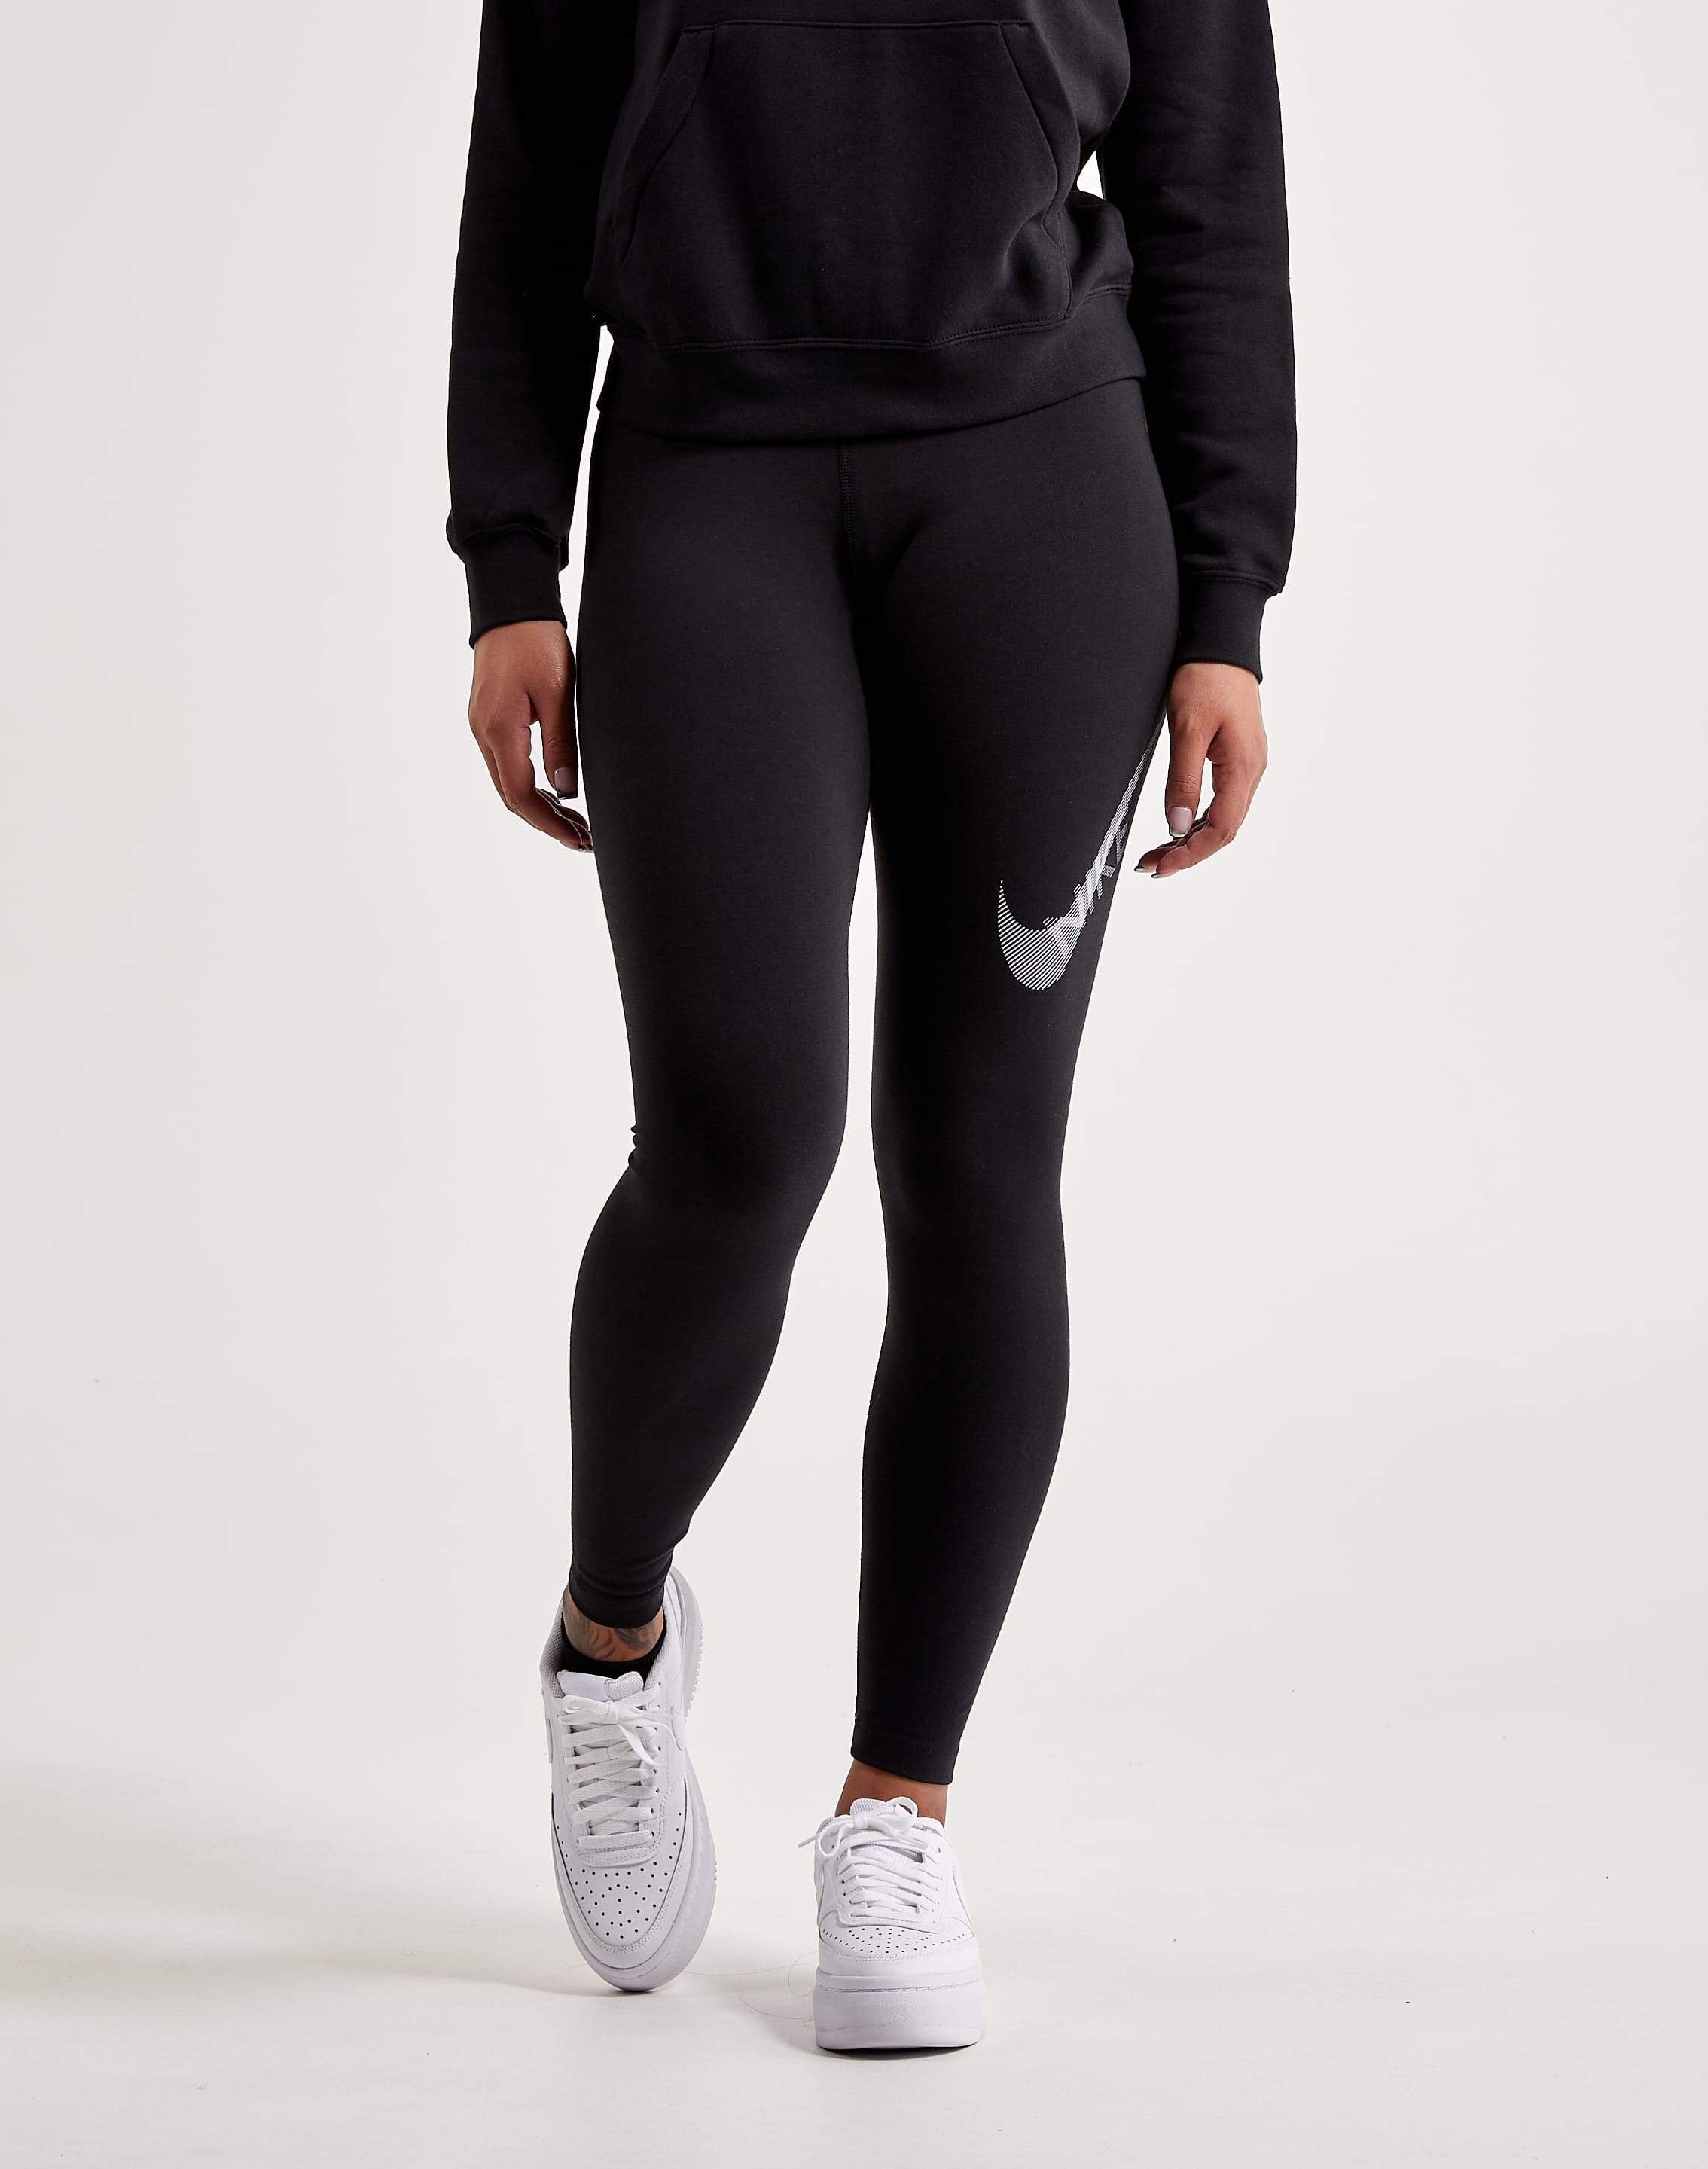 Nike Swoosh Leggings – DTLR